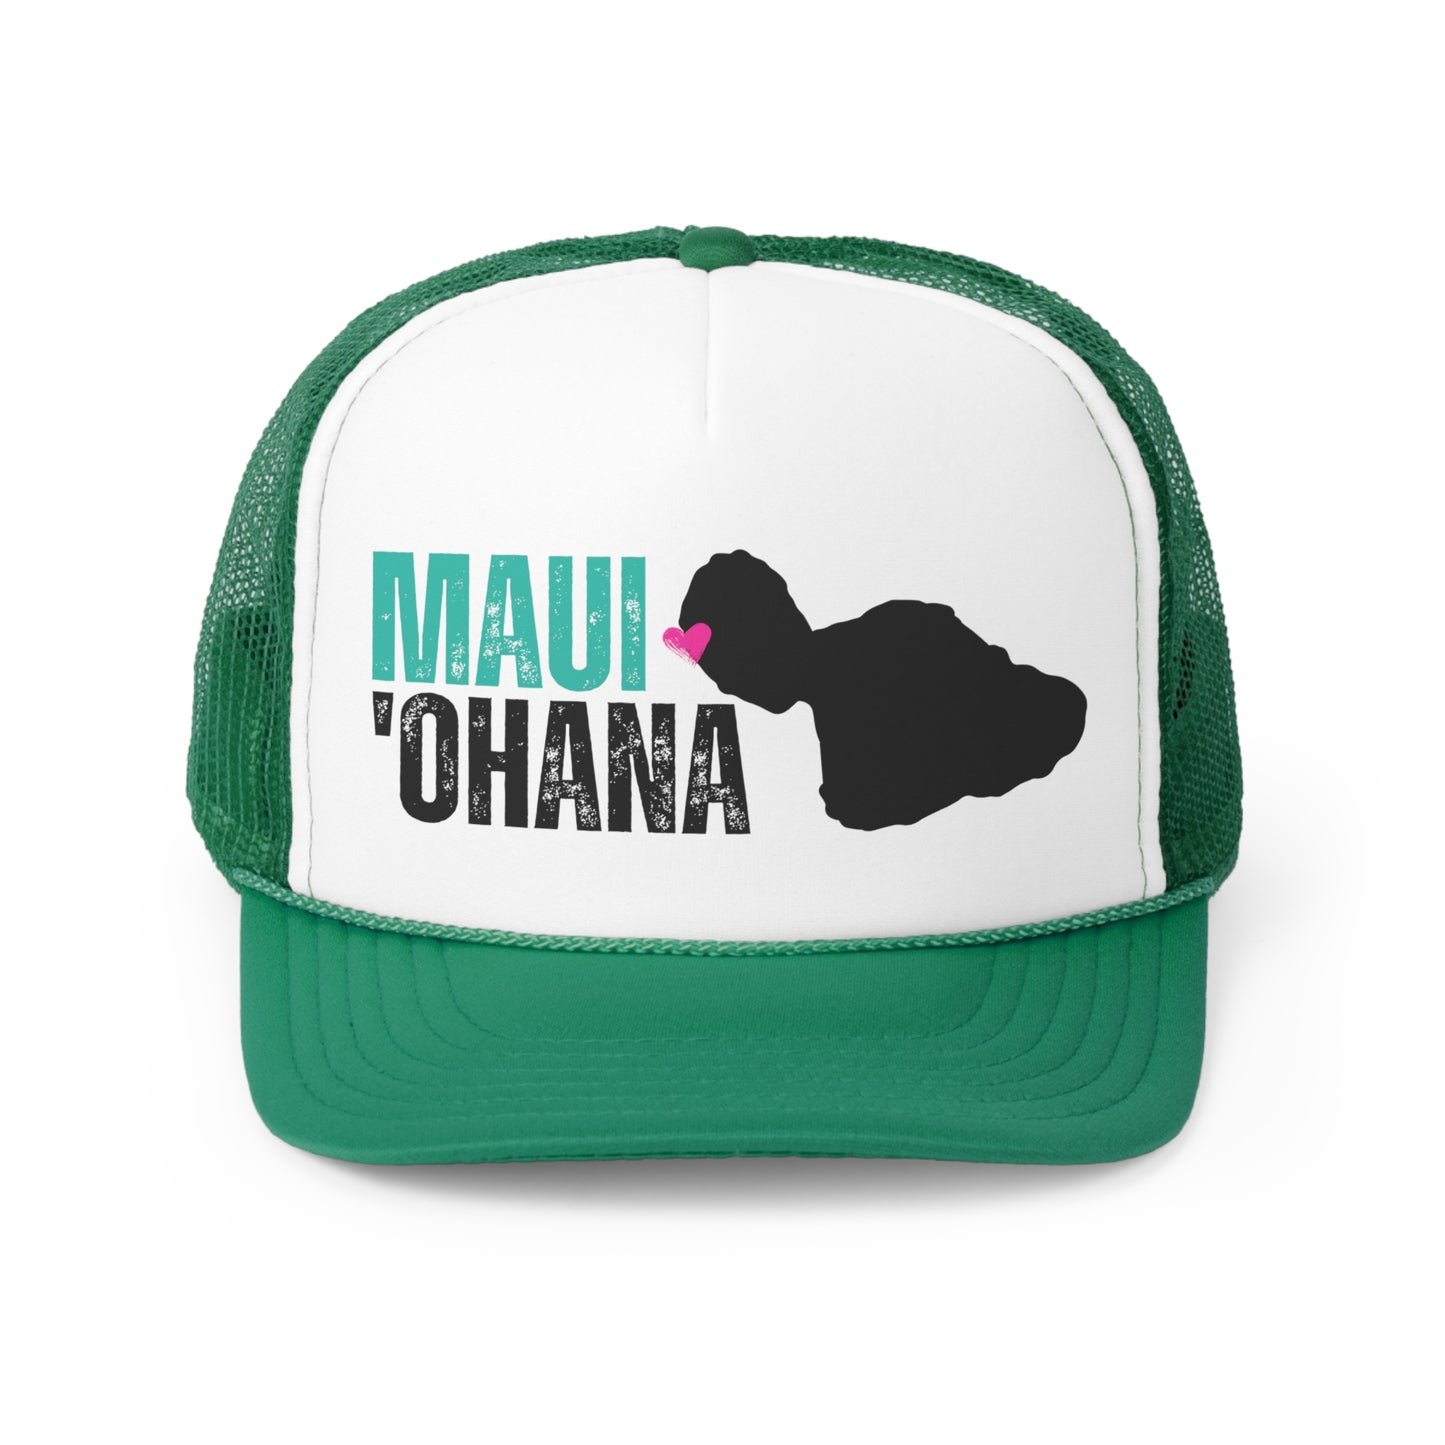 Maui 'ohana - Maui Strong Trucker Hat - Maui Fire Aid Donation